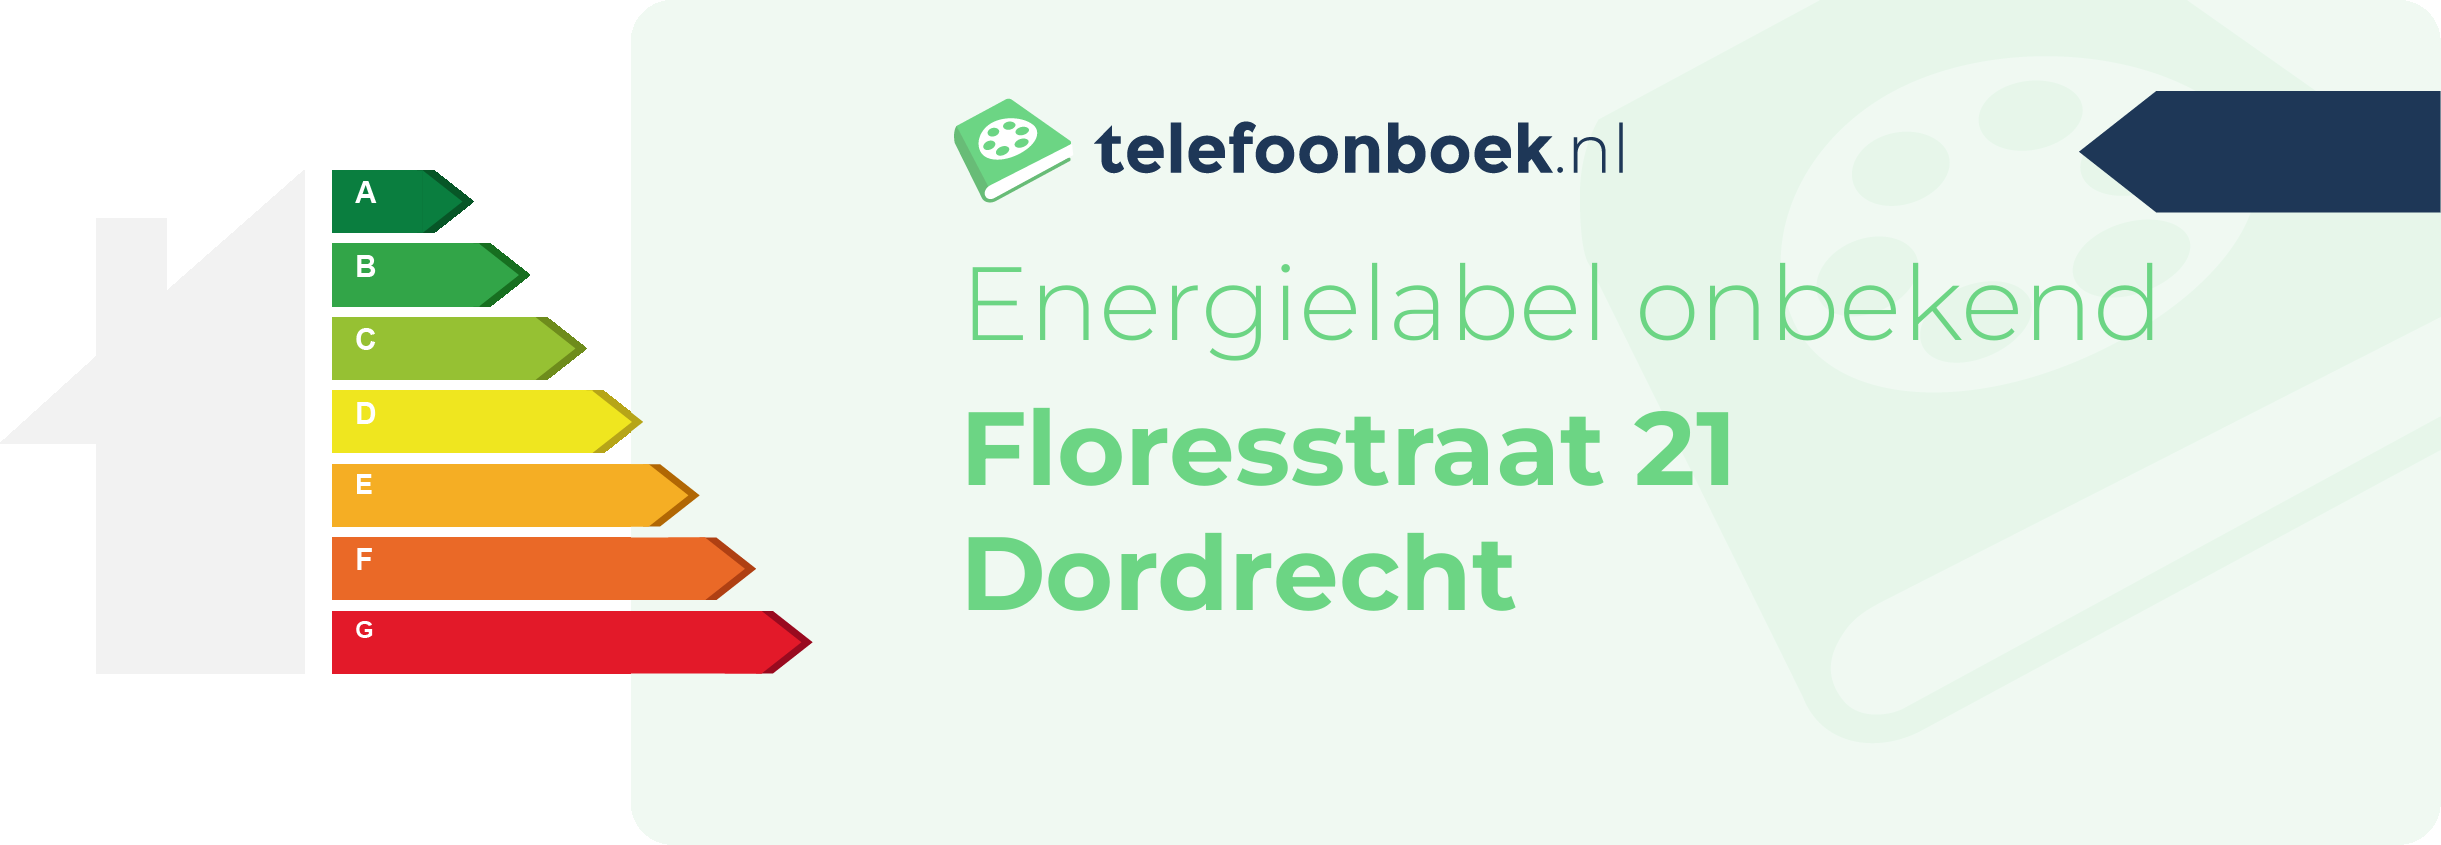 Energielabel Floresstraat 21 Dordrecht